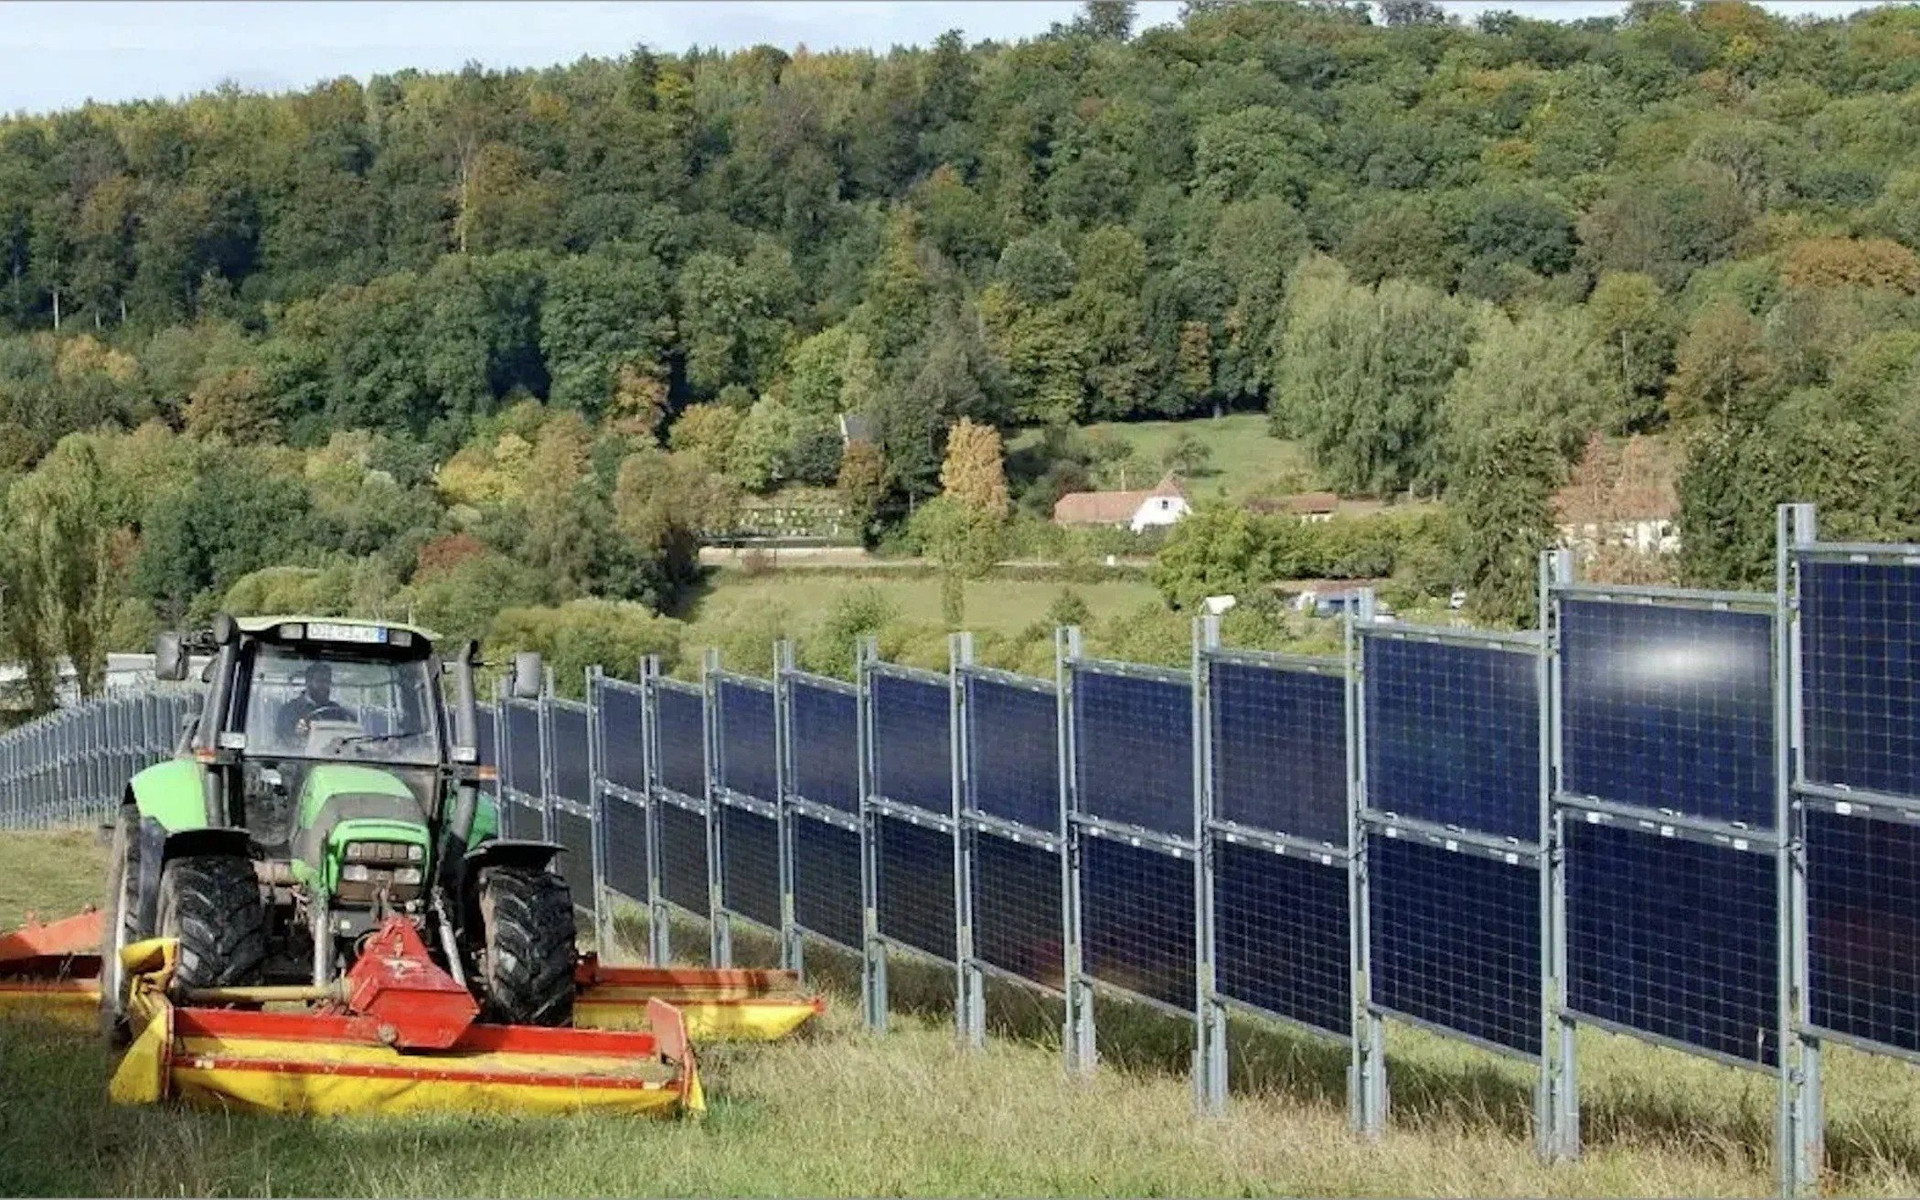 Các tấm pin mặt trời được dùng làm hàng rào ở châu Âu: Cơn lũ hàng giá rẻ của Trung Quốc đã khiến một ngành đắt đỏ trở nên phải chăng như thế nào?- Ảnh 1.